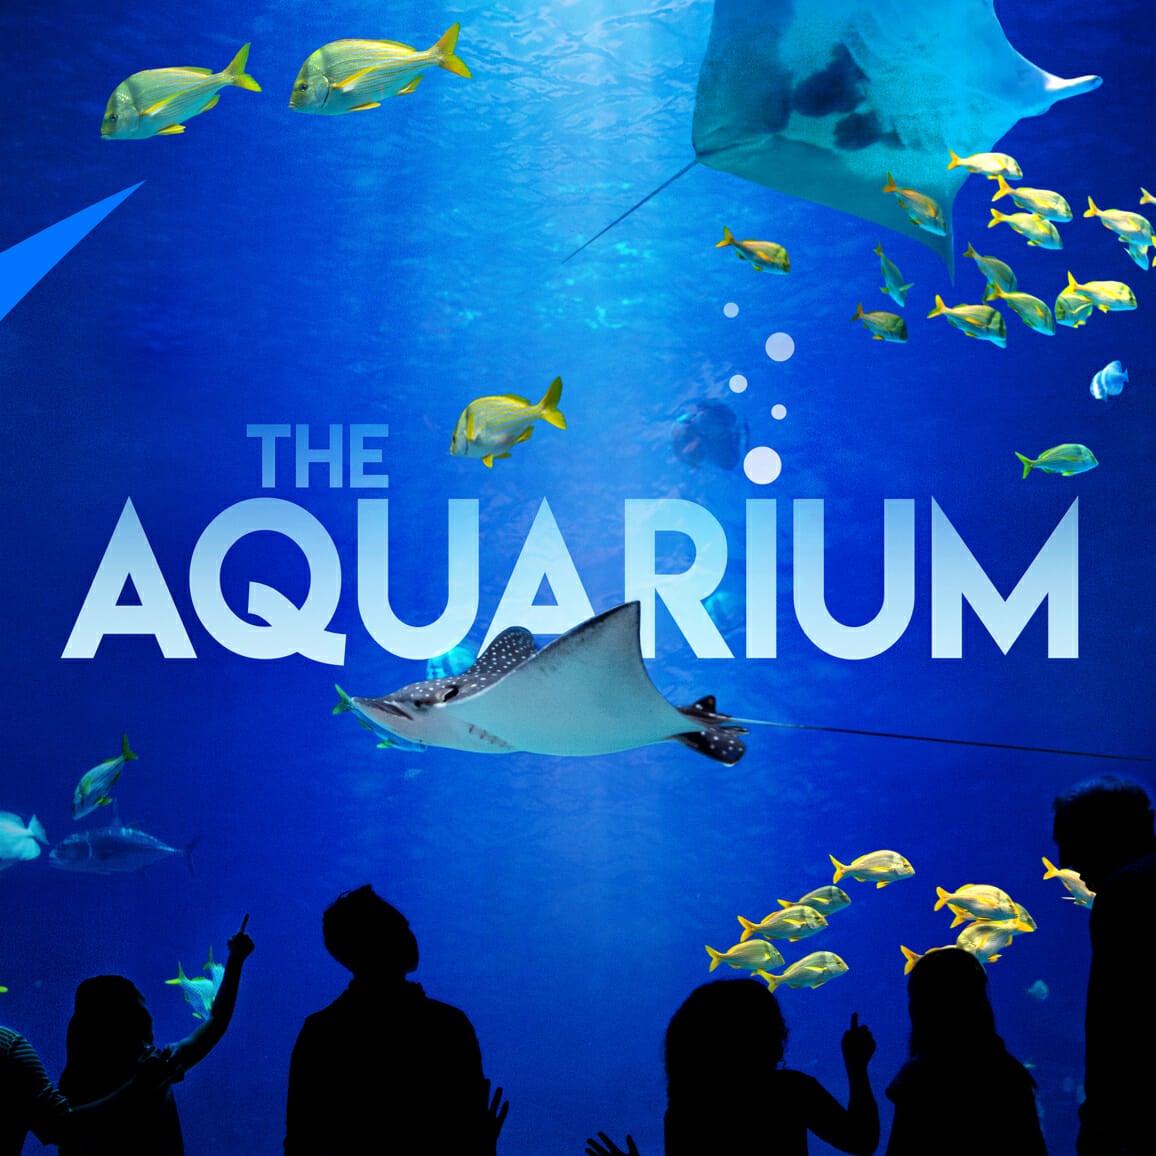 The Aquarium, on Animal Planet - Georgia Aquarium